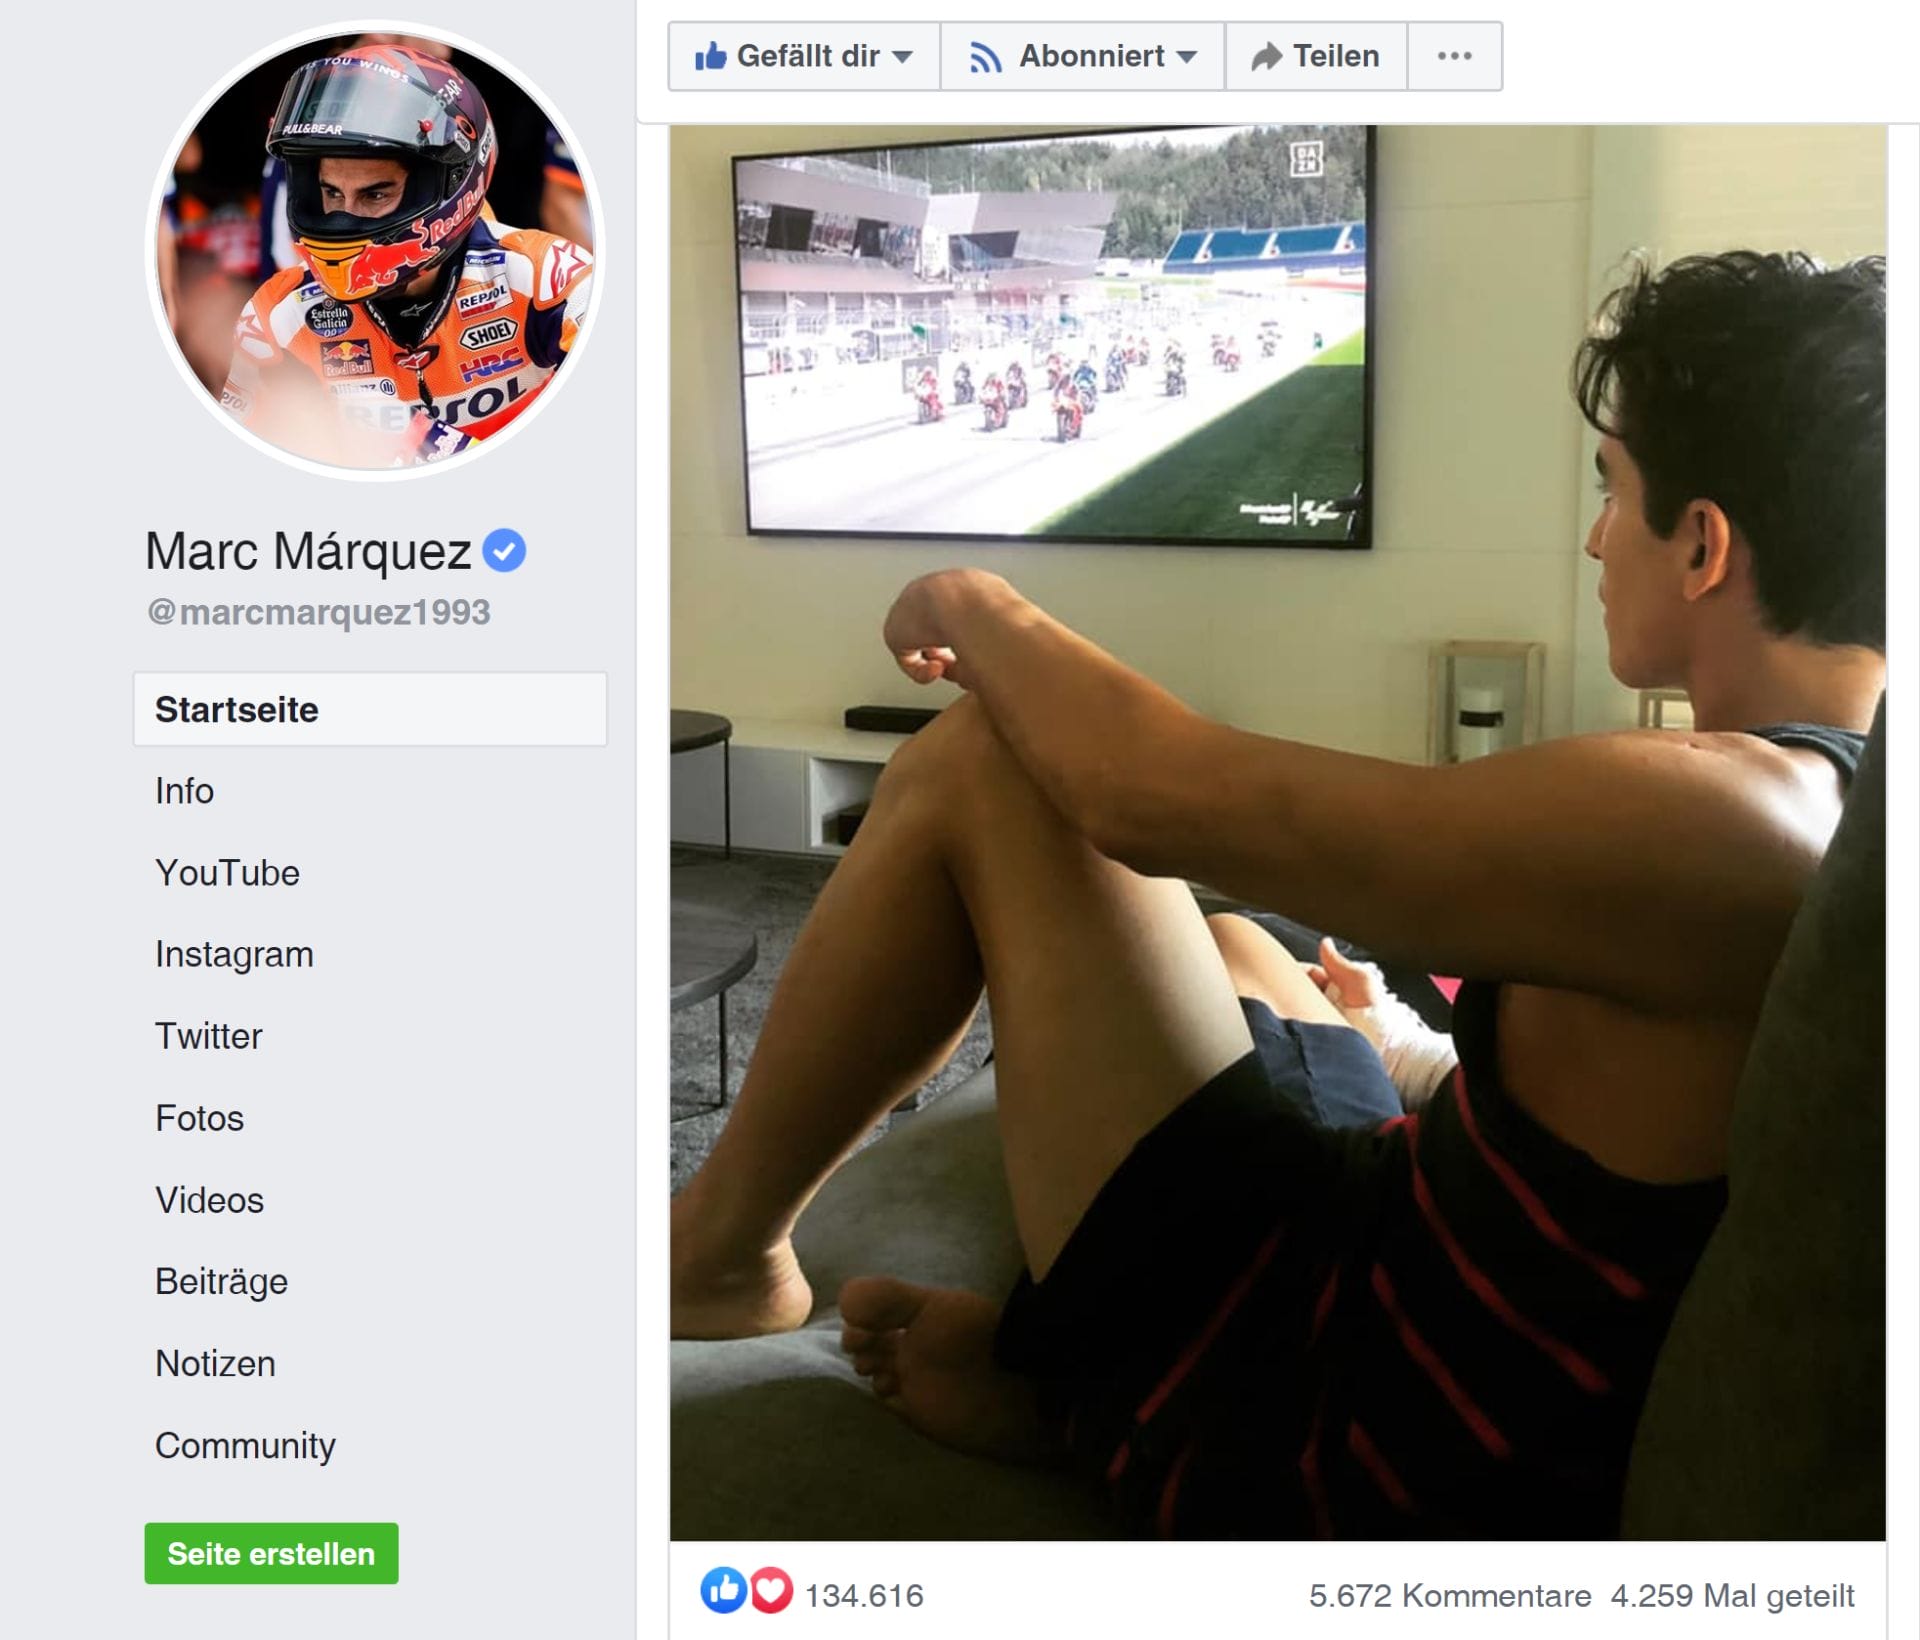 Marc Marquez wird noch 2-3 Monate ausfallen
- auch in der MOTORRAD NACHRICHTEN APP